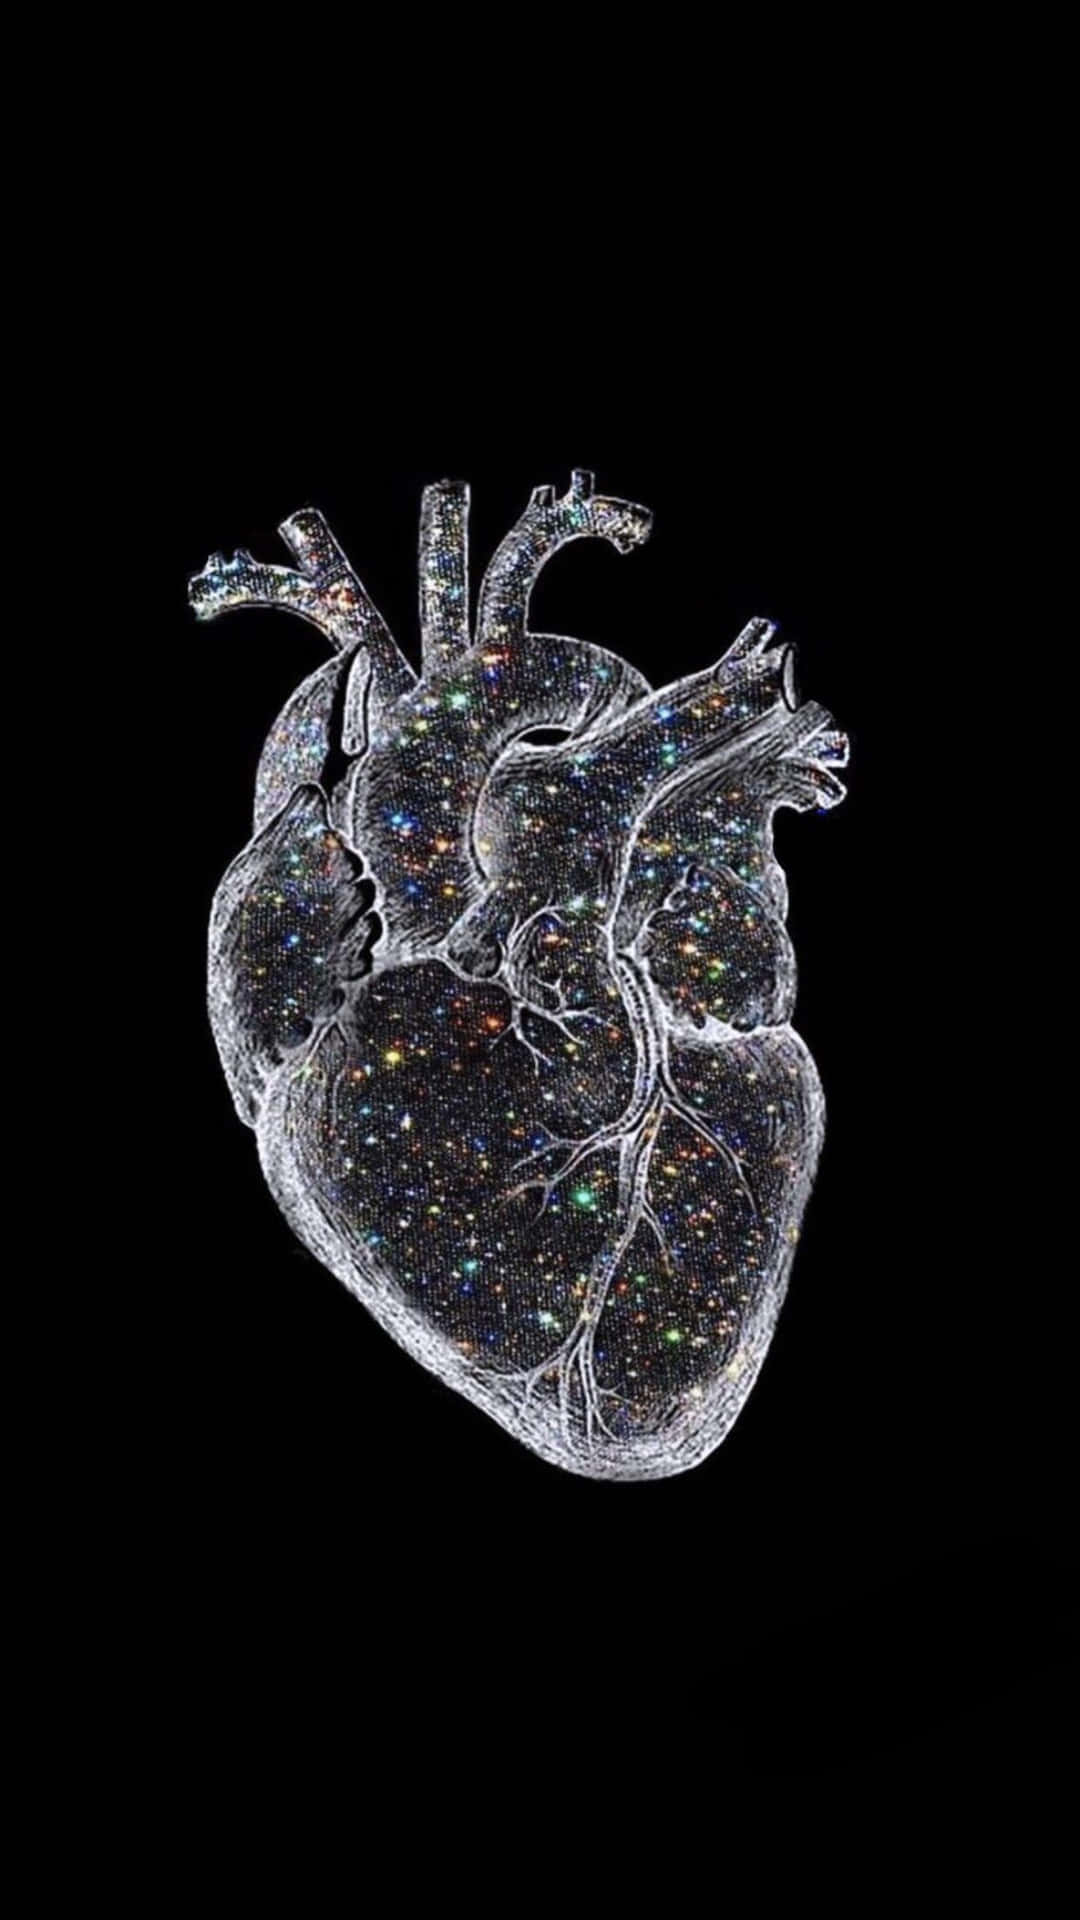 Sparkling Human Heart Artwork Wallpaper